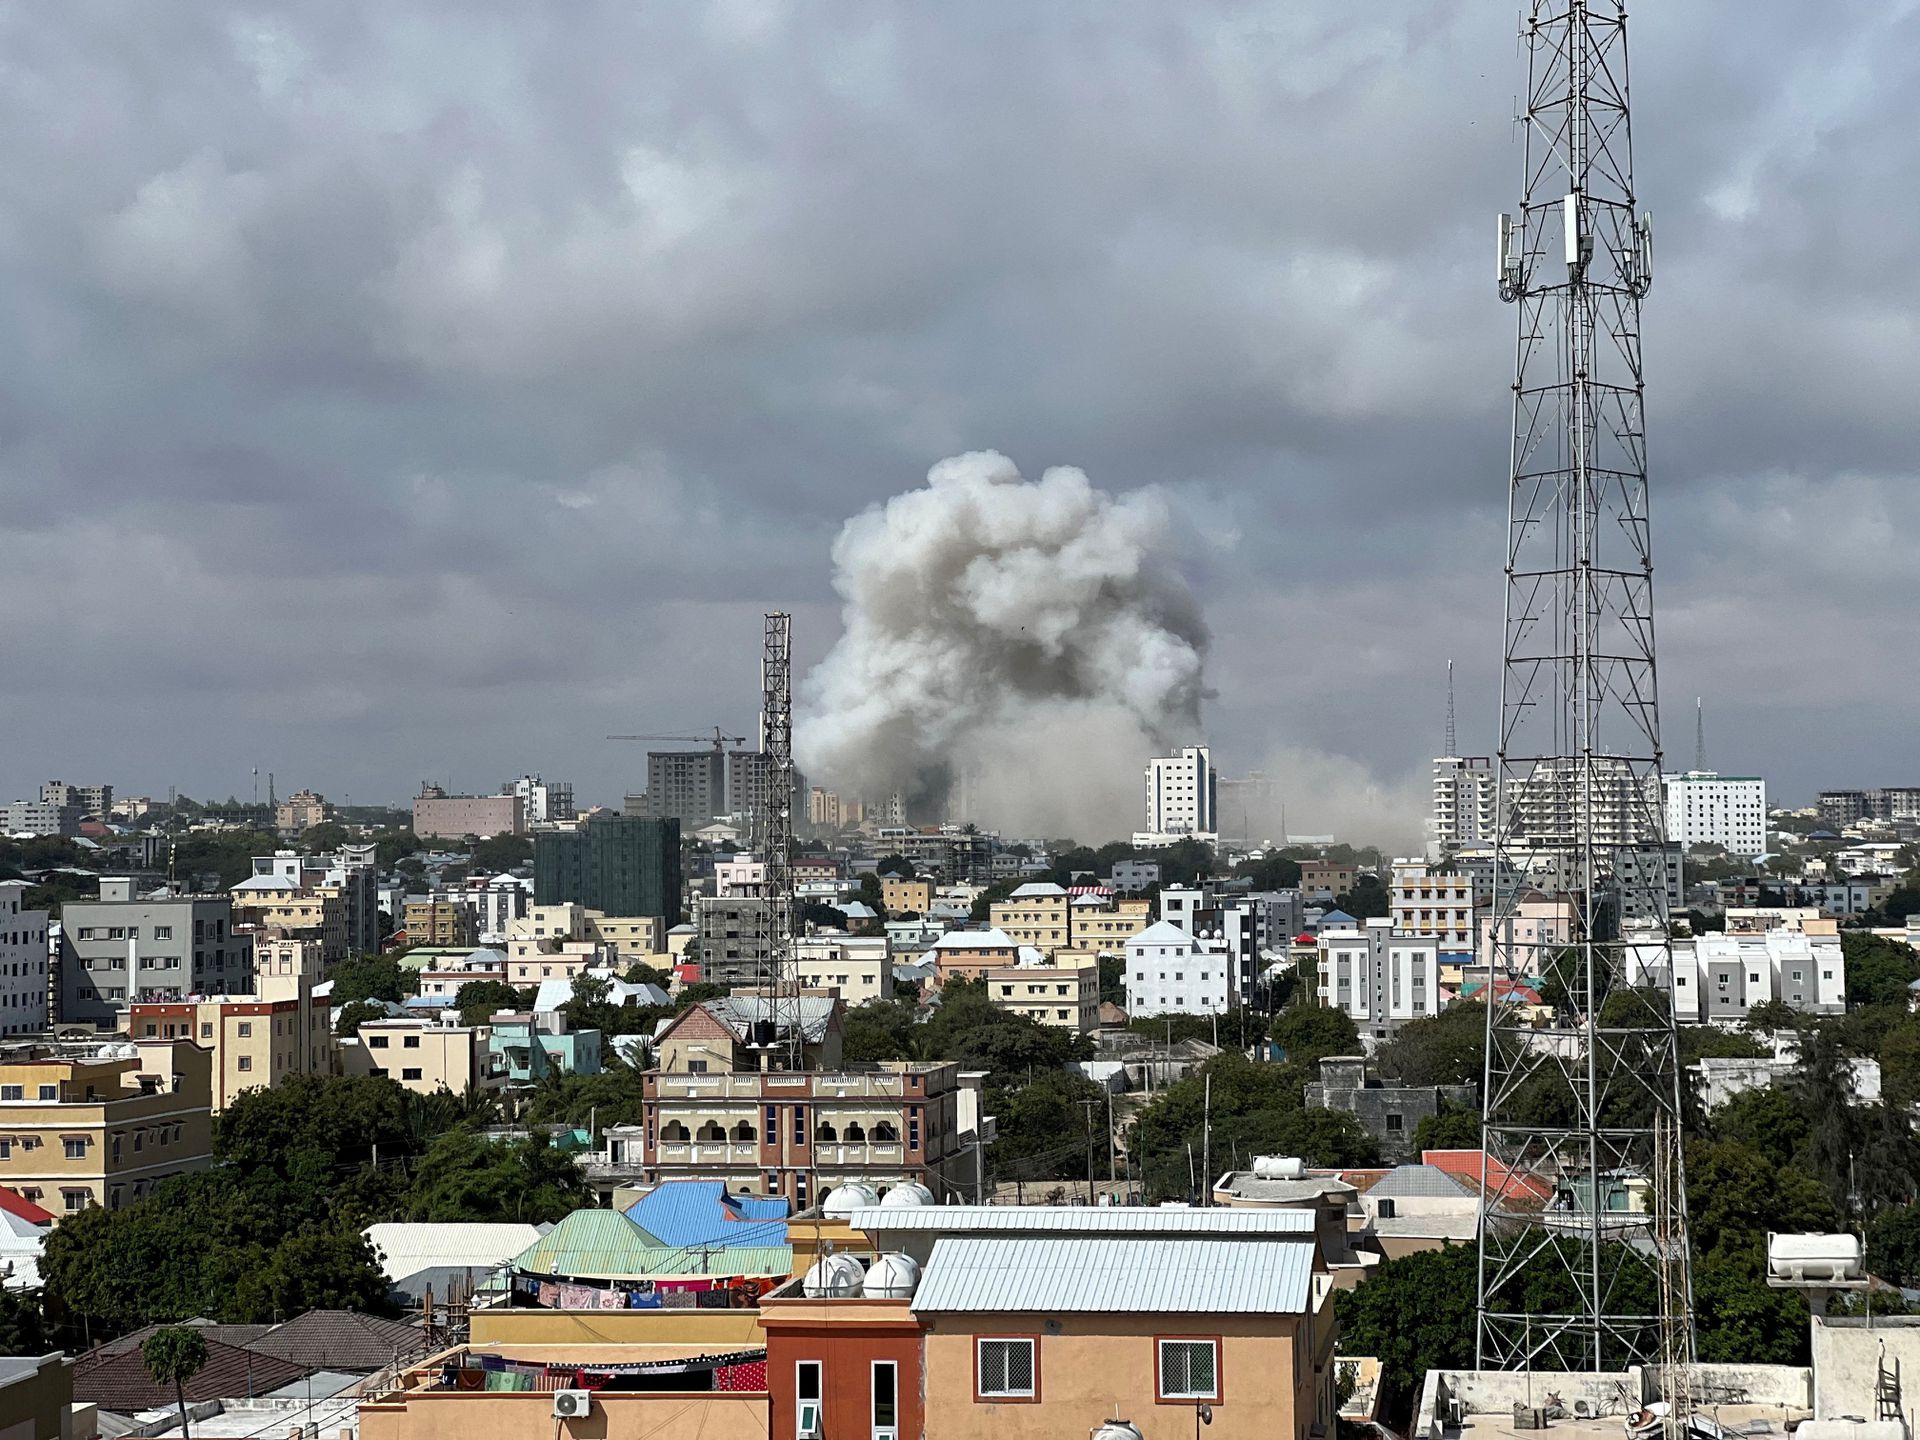 شمار قربانیان حمله تروریستی در سومالی به 400 کشته و زخمی رسید